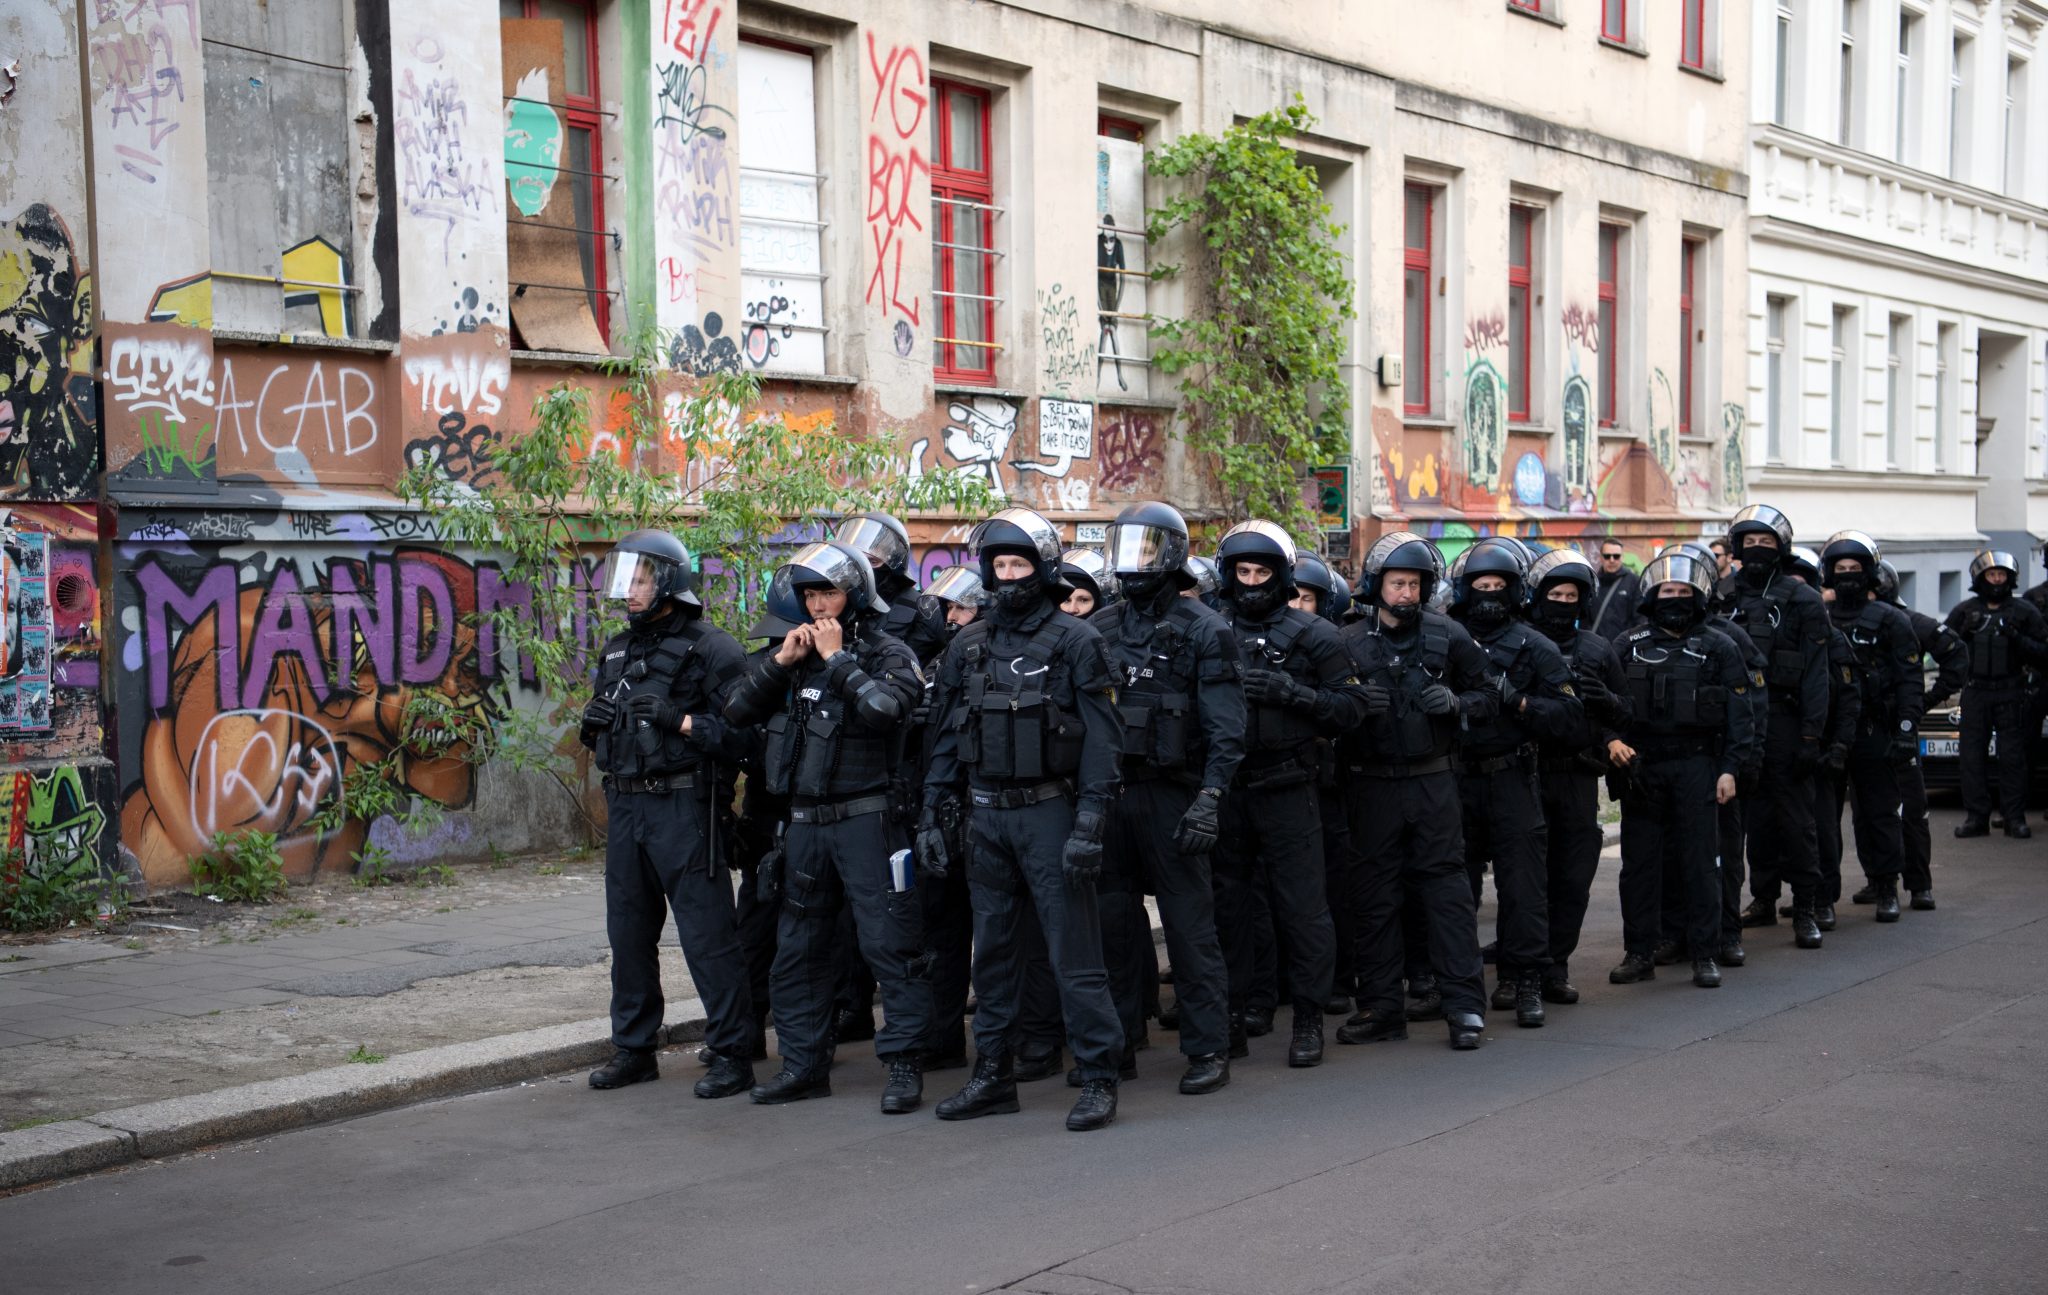 Polizisten in Berlin am Rande einer 1. Mai-Demo: Die Debatte über Angriffe auf Polizisten läuft Foto: picture alliance/Ralf Hirschberger/dpa